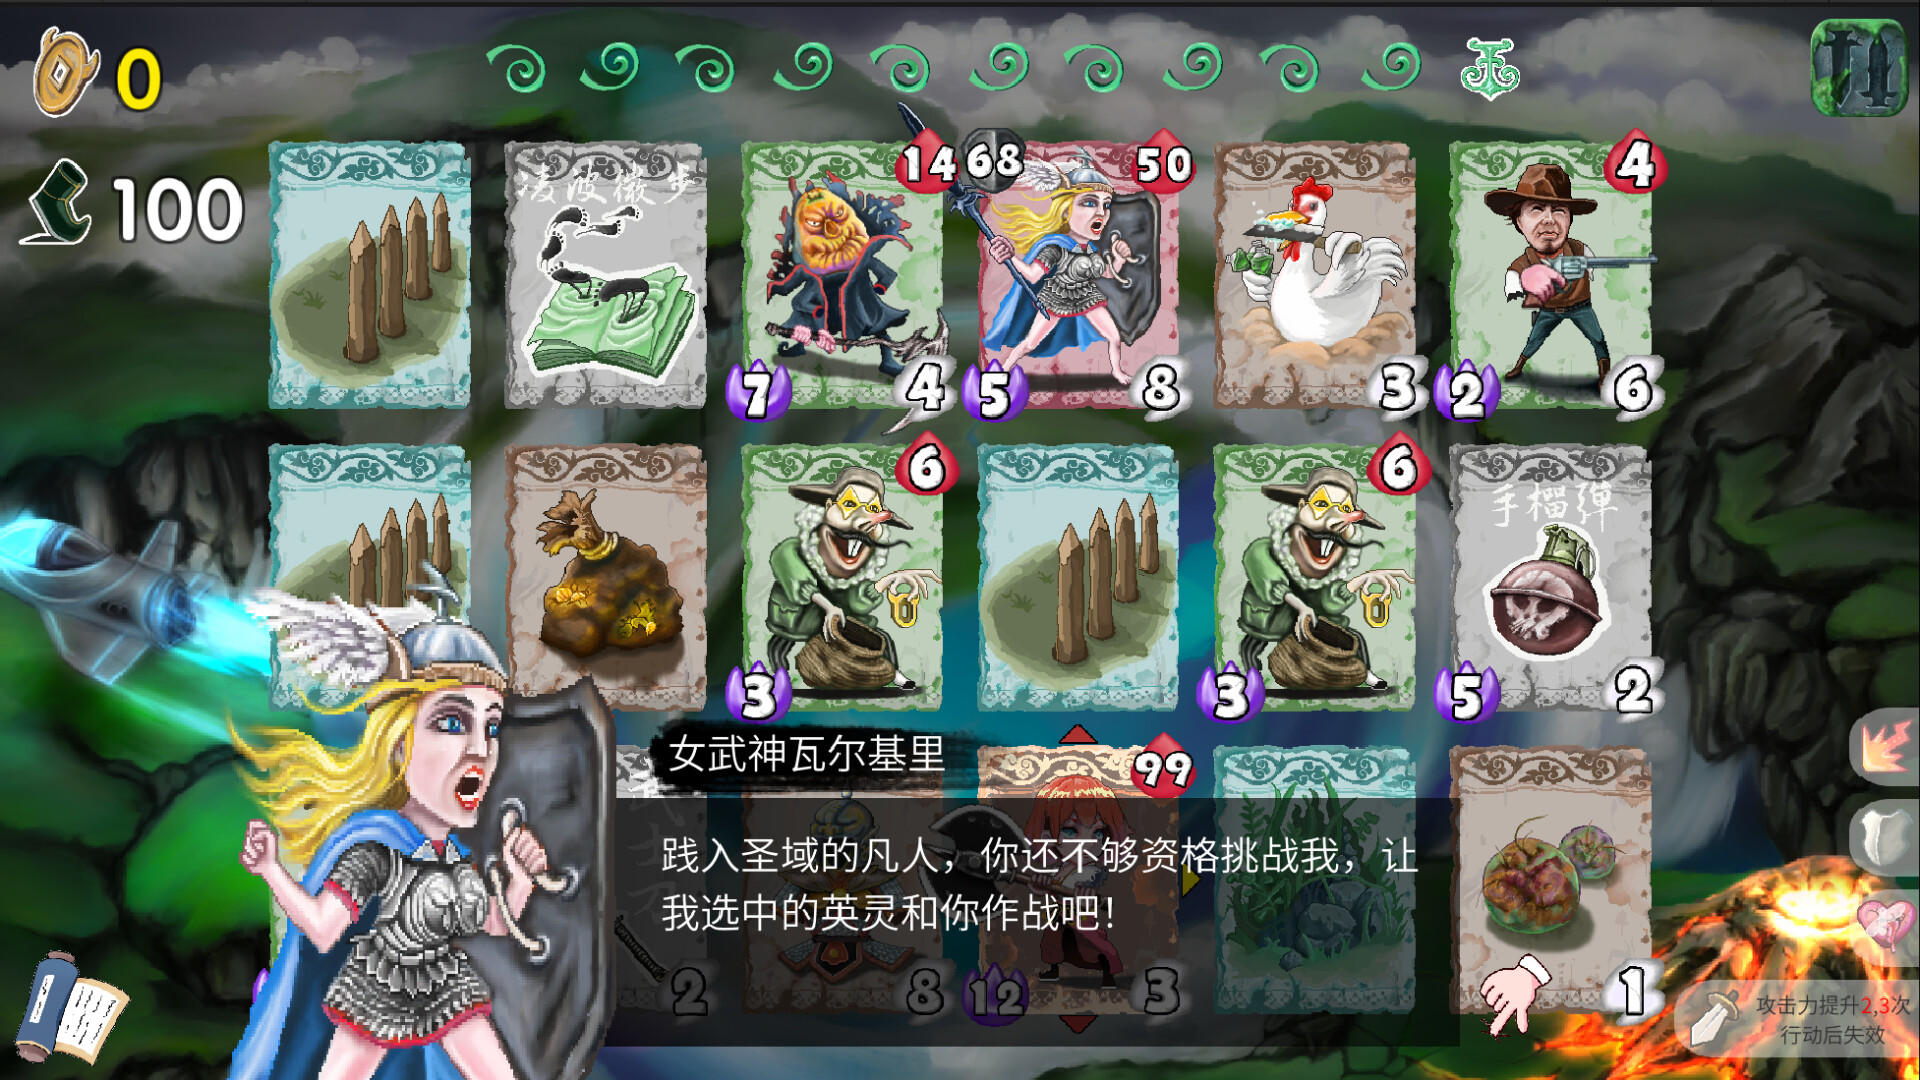 唐草卡 Vinecard screenshot game